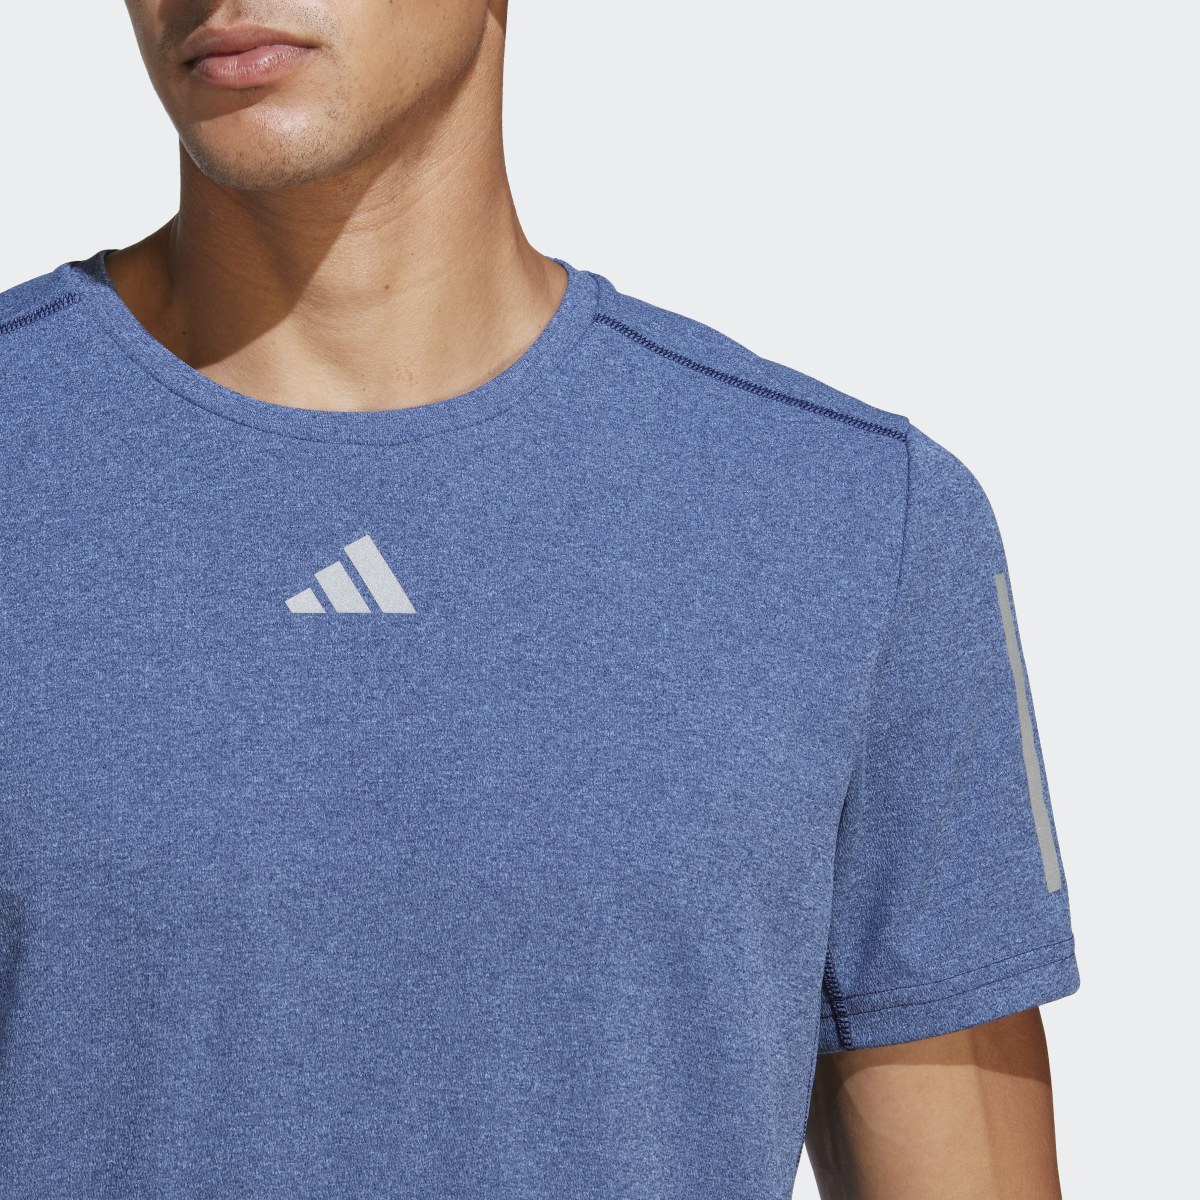 Adidas T-shirt Own the Run. 7